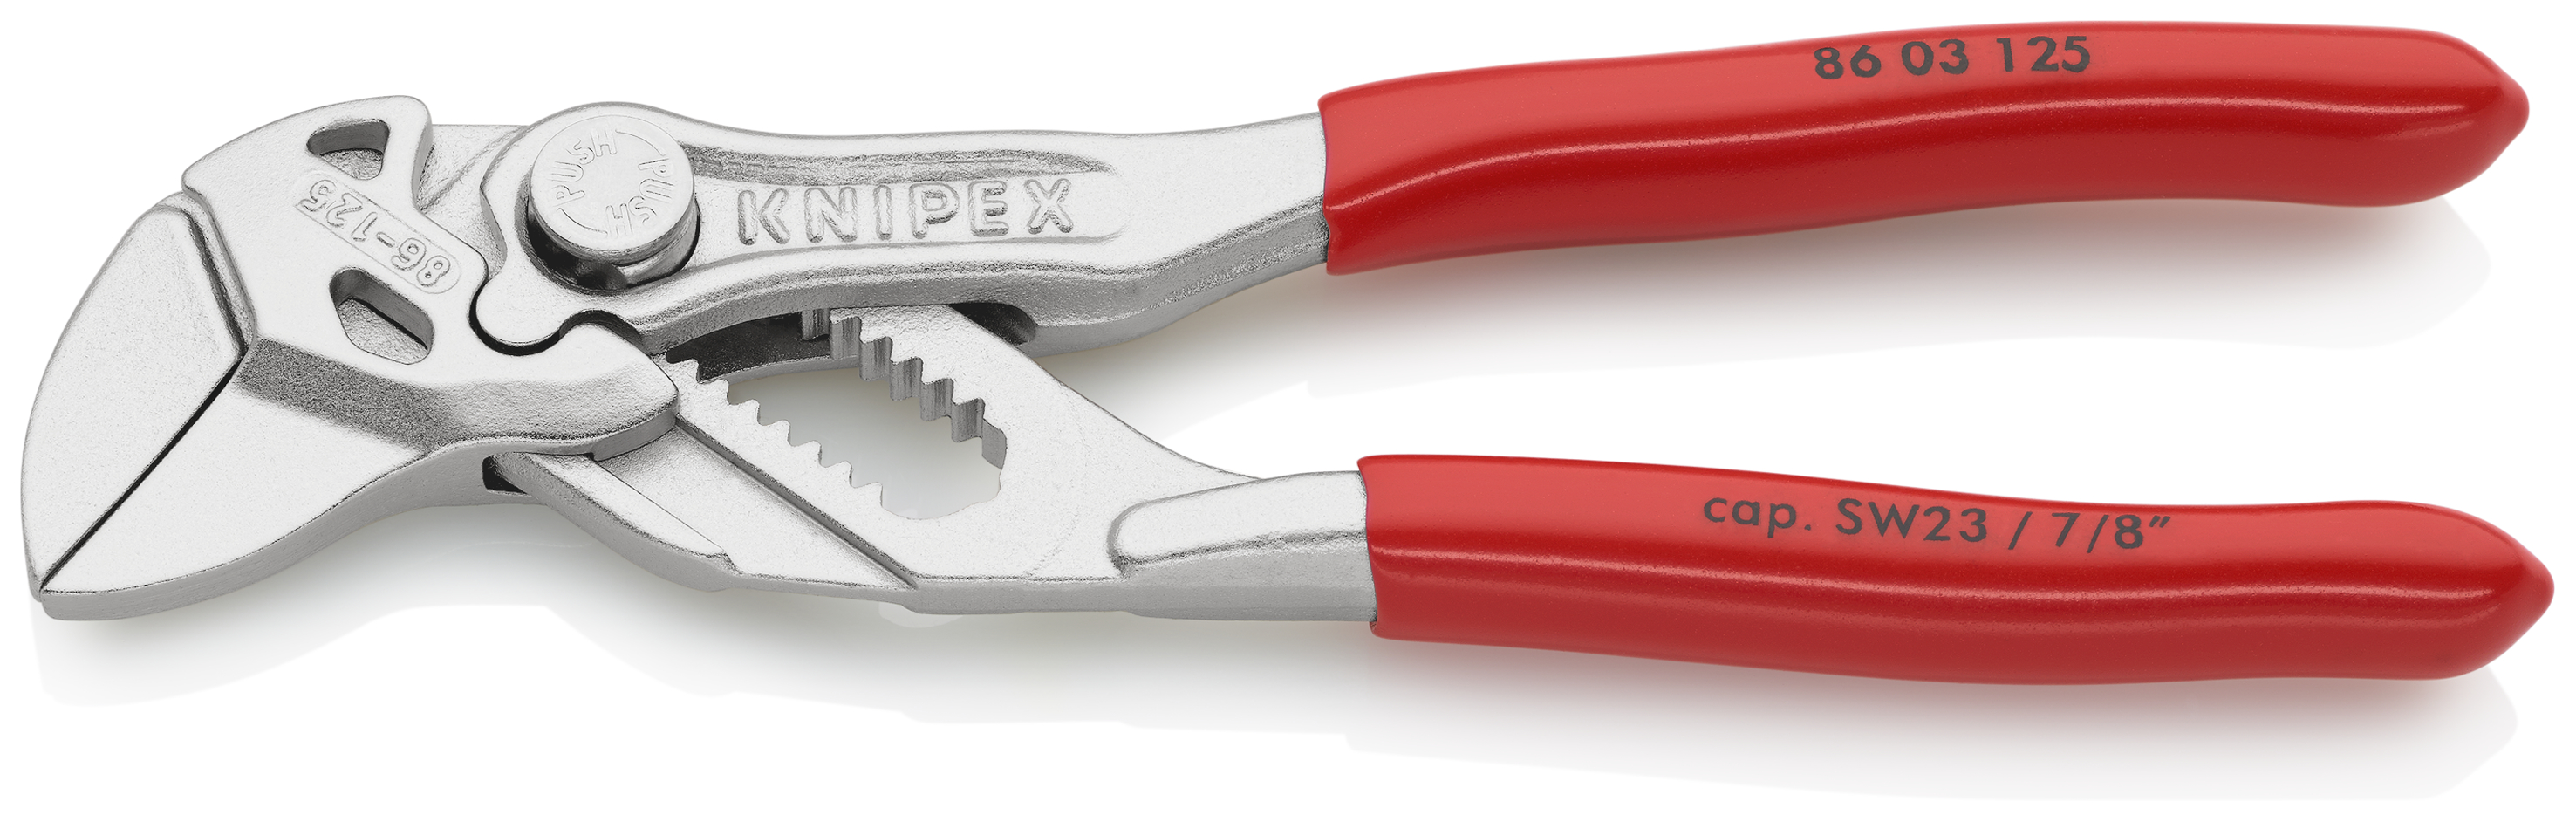 KNIPEX 86 CBdirekt Sanitär für in Zange / und Garten Zangenschlüssel Schraubenschlüssel Profi-Shop 125 Werkzeug 03 | 